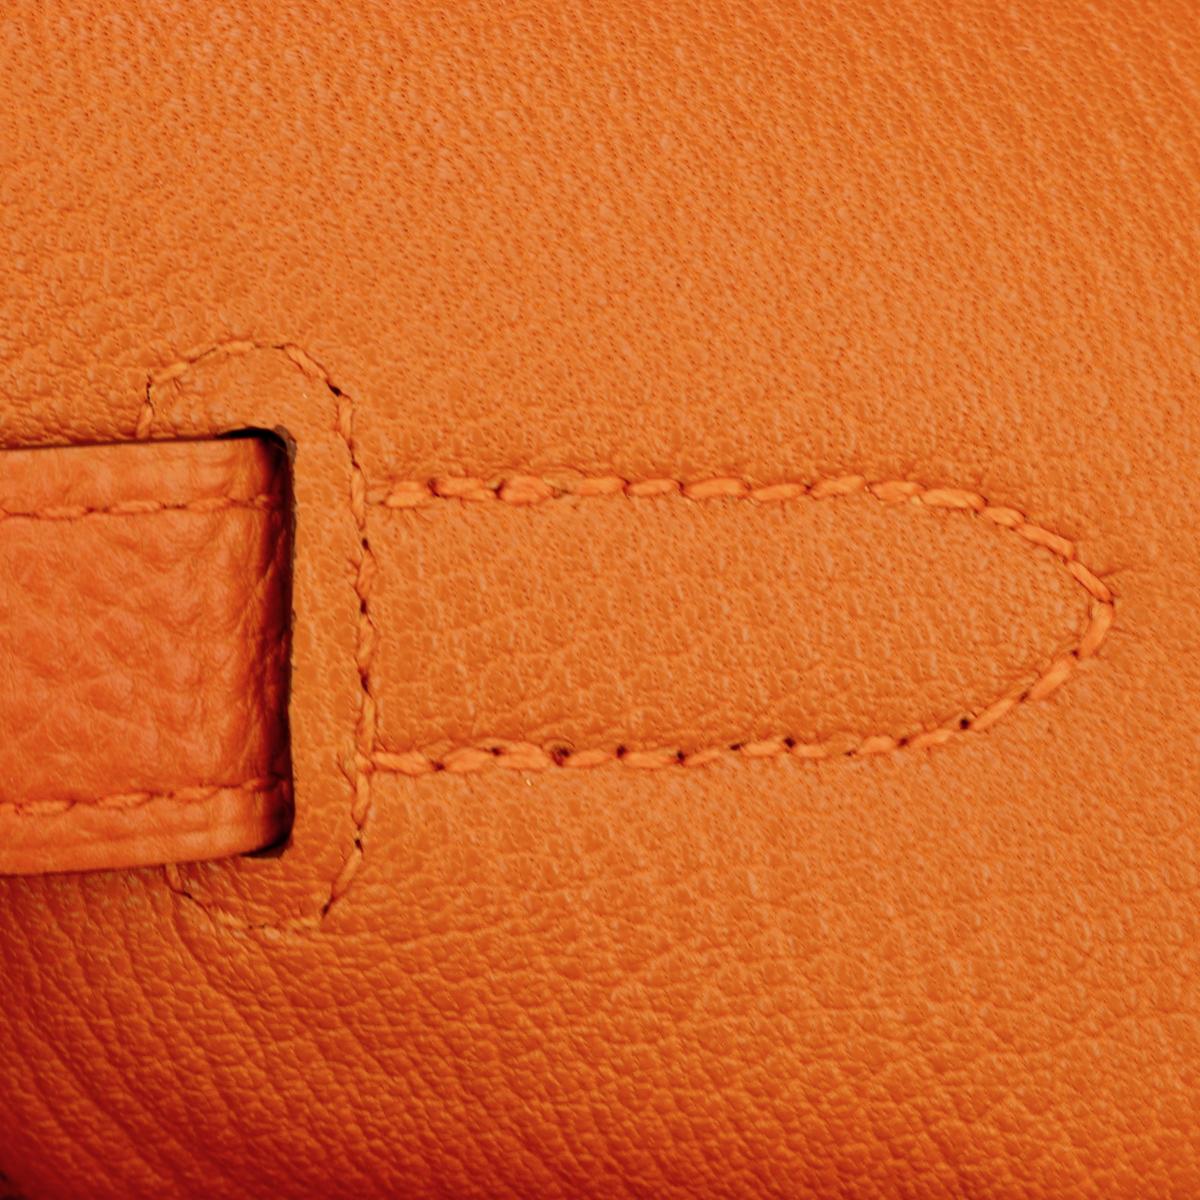 Hermès Birkin Bag 35cm Orange Togo Leather with Palladium Hardware Stamp M 2009 9